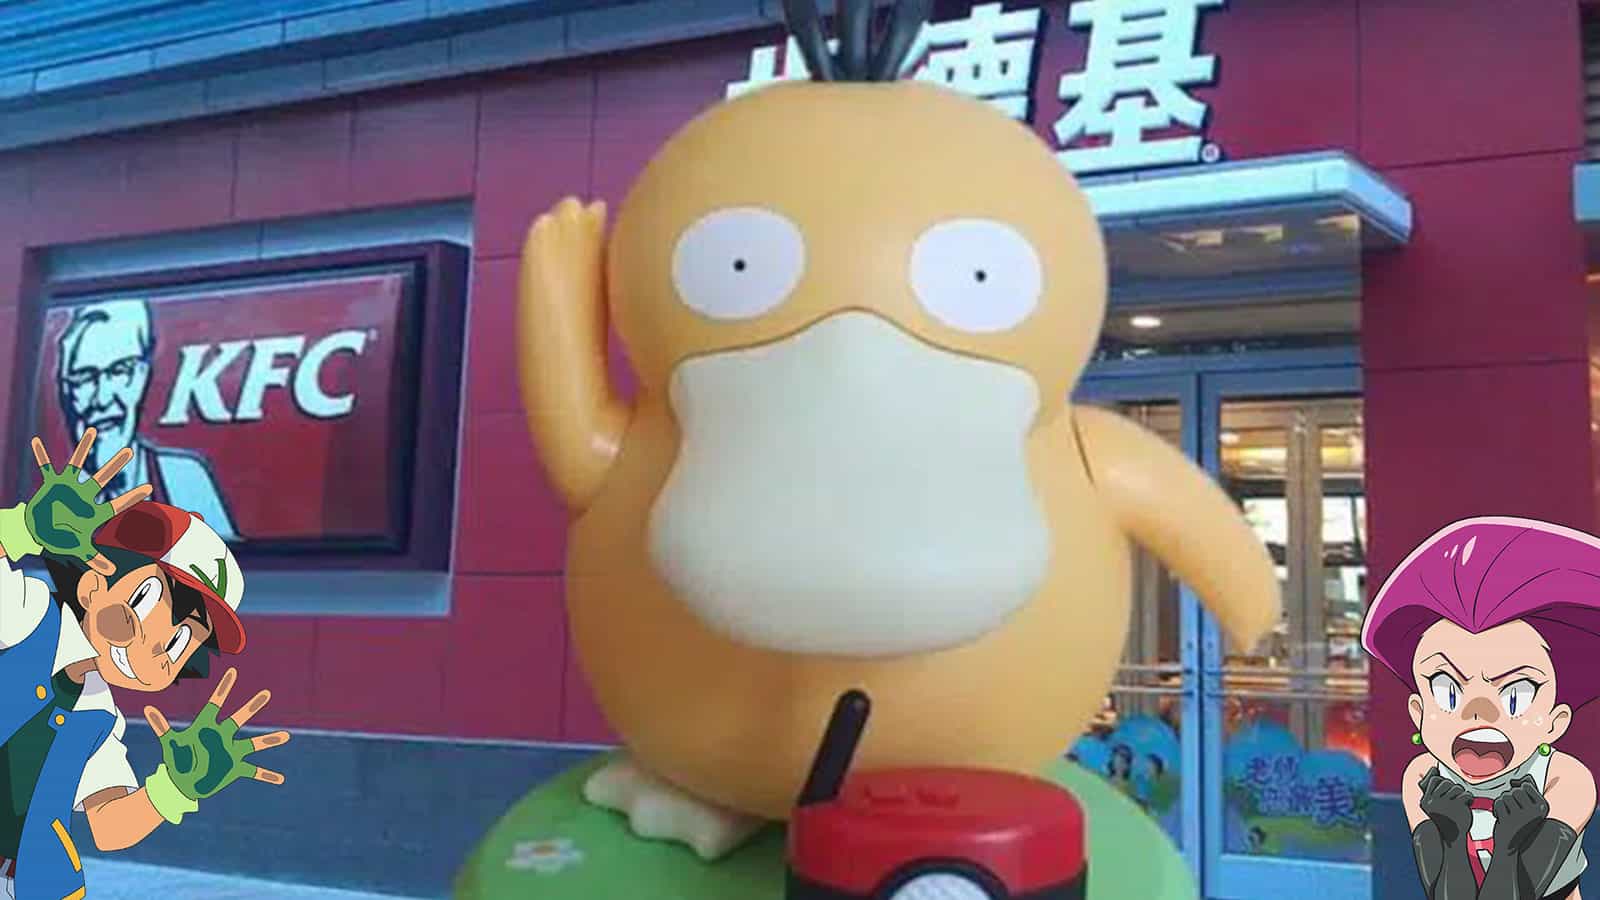 Les fans de Pokémon s'arrachent ce jouet Psykokwak en Chine 